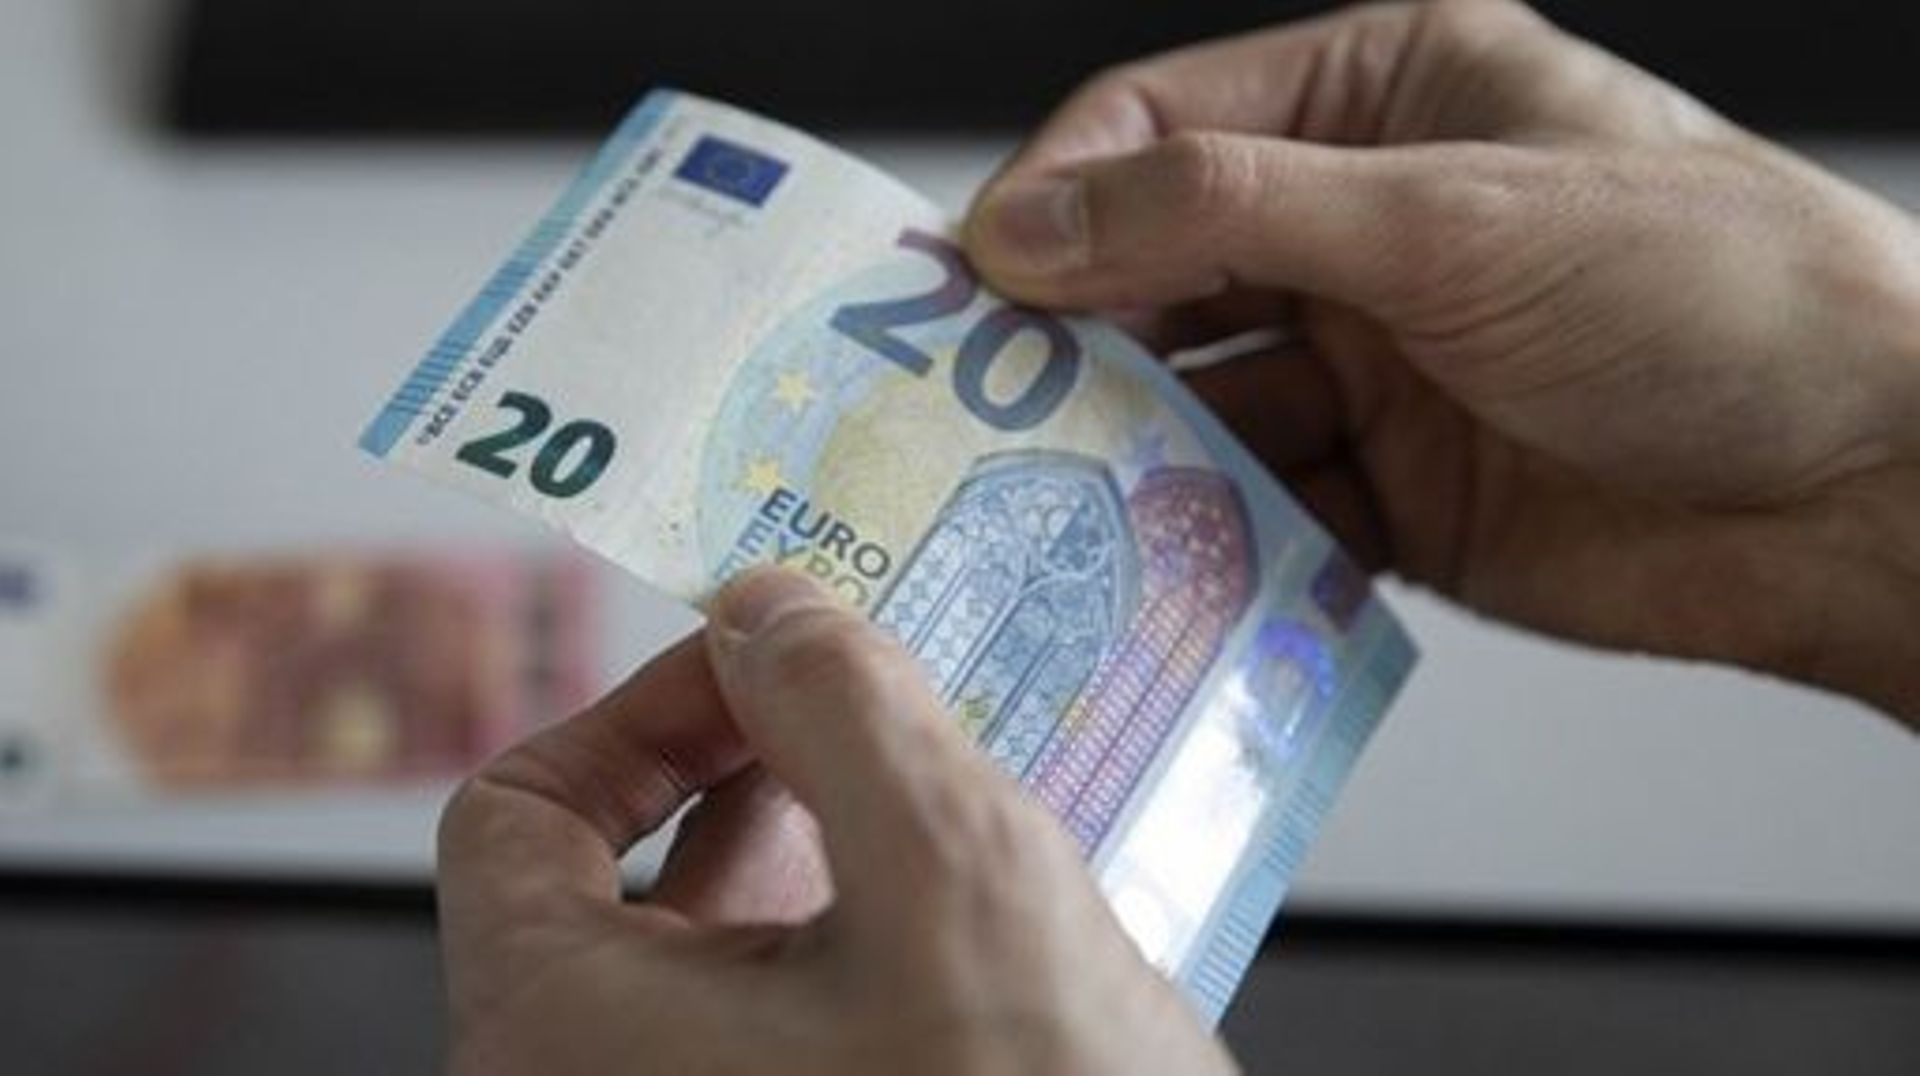 Débat] Avec l'euro numérique, l'argent liquide va-t-il couler à pic ?